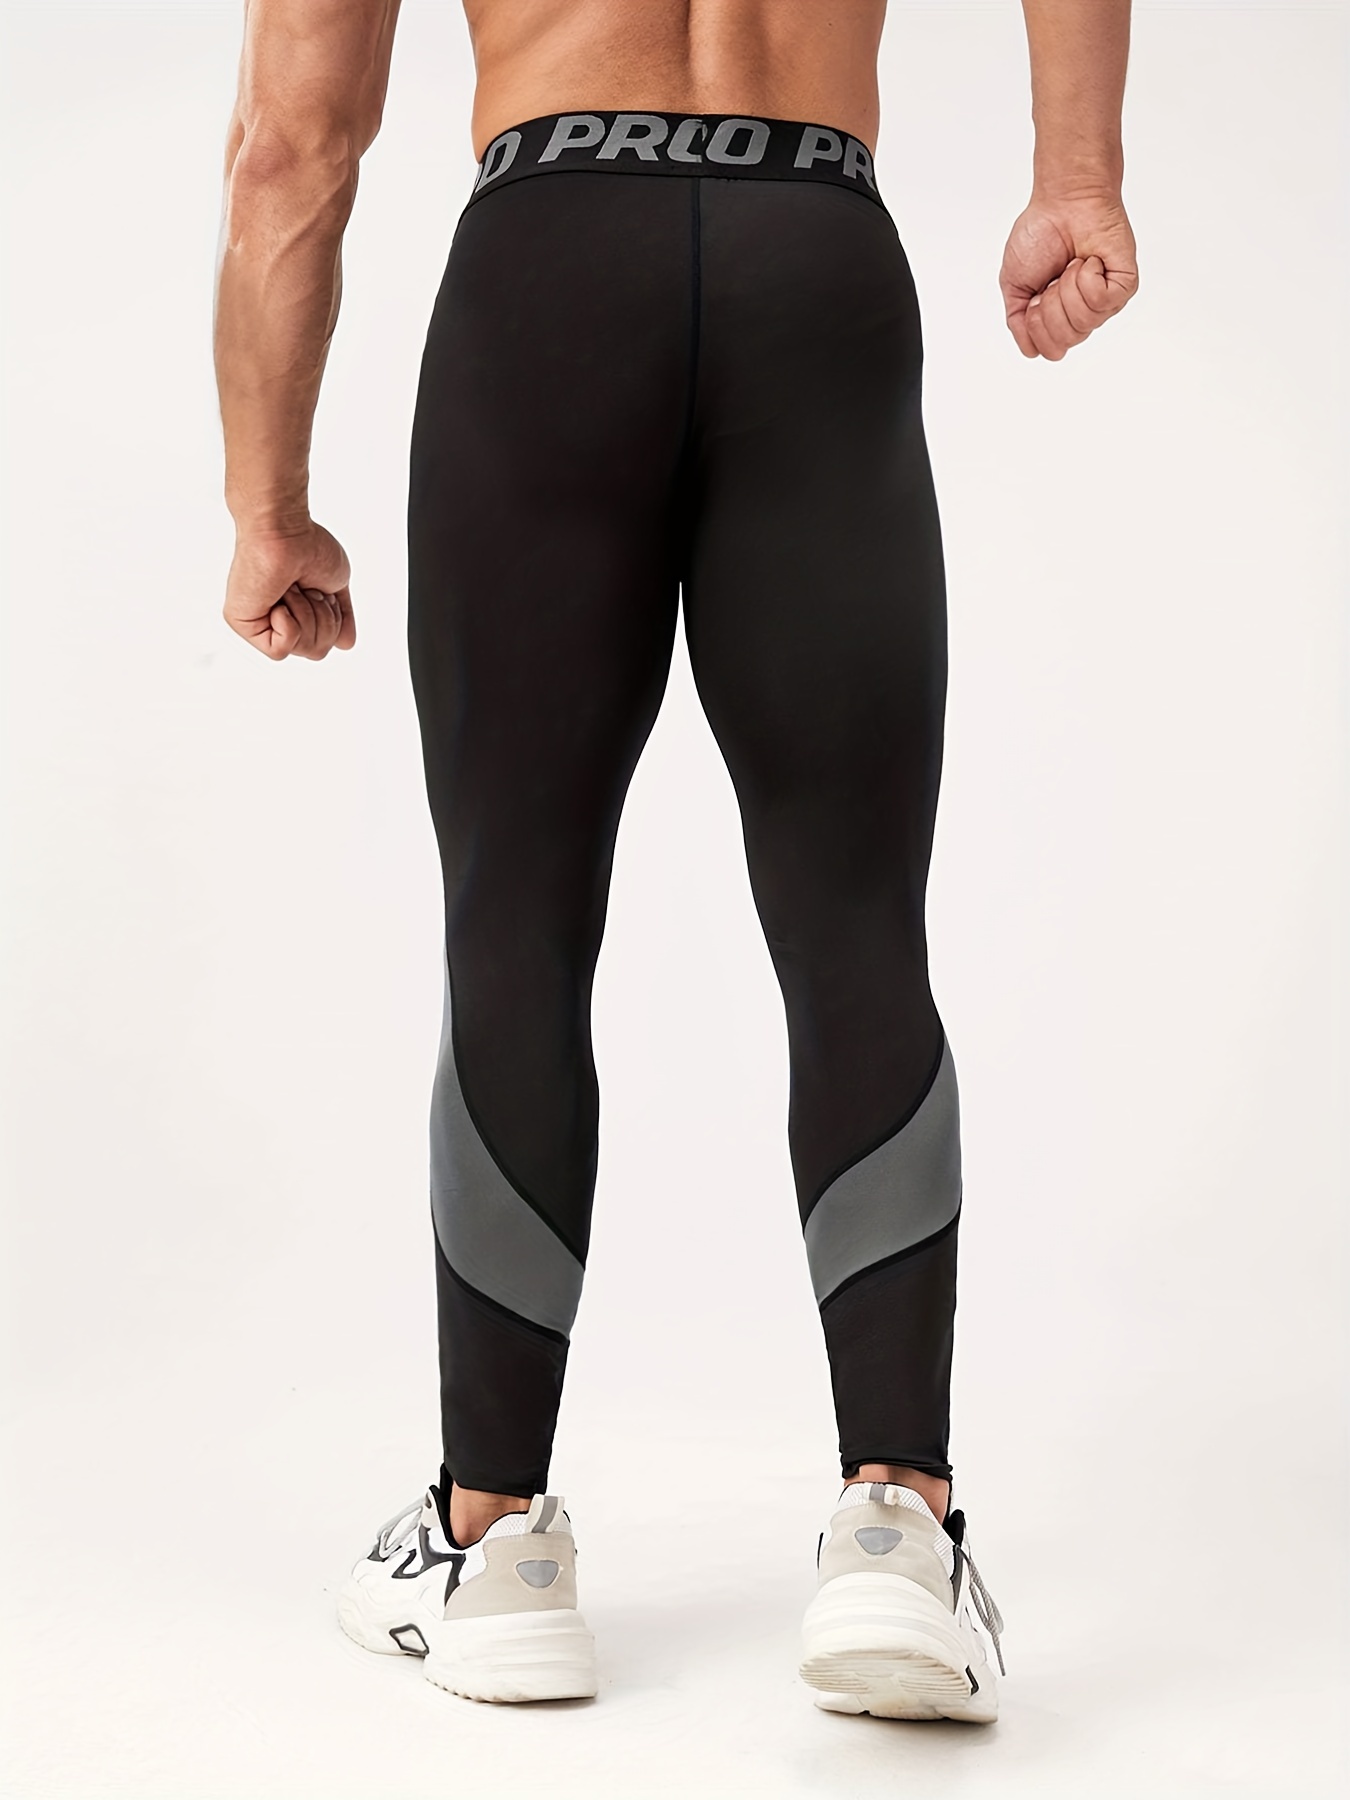 GANYANR Running Tights Men Sports Legging Fitness Yoga Basketball  Compression Athletic Long Bodybuilding Gym Jogging Pants Skins Color:  Black, Size: L